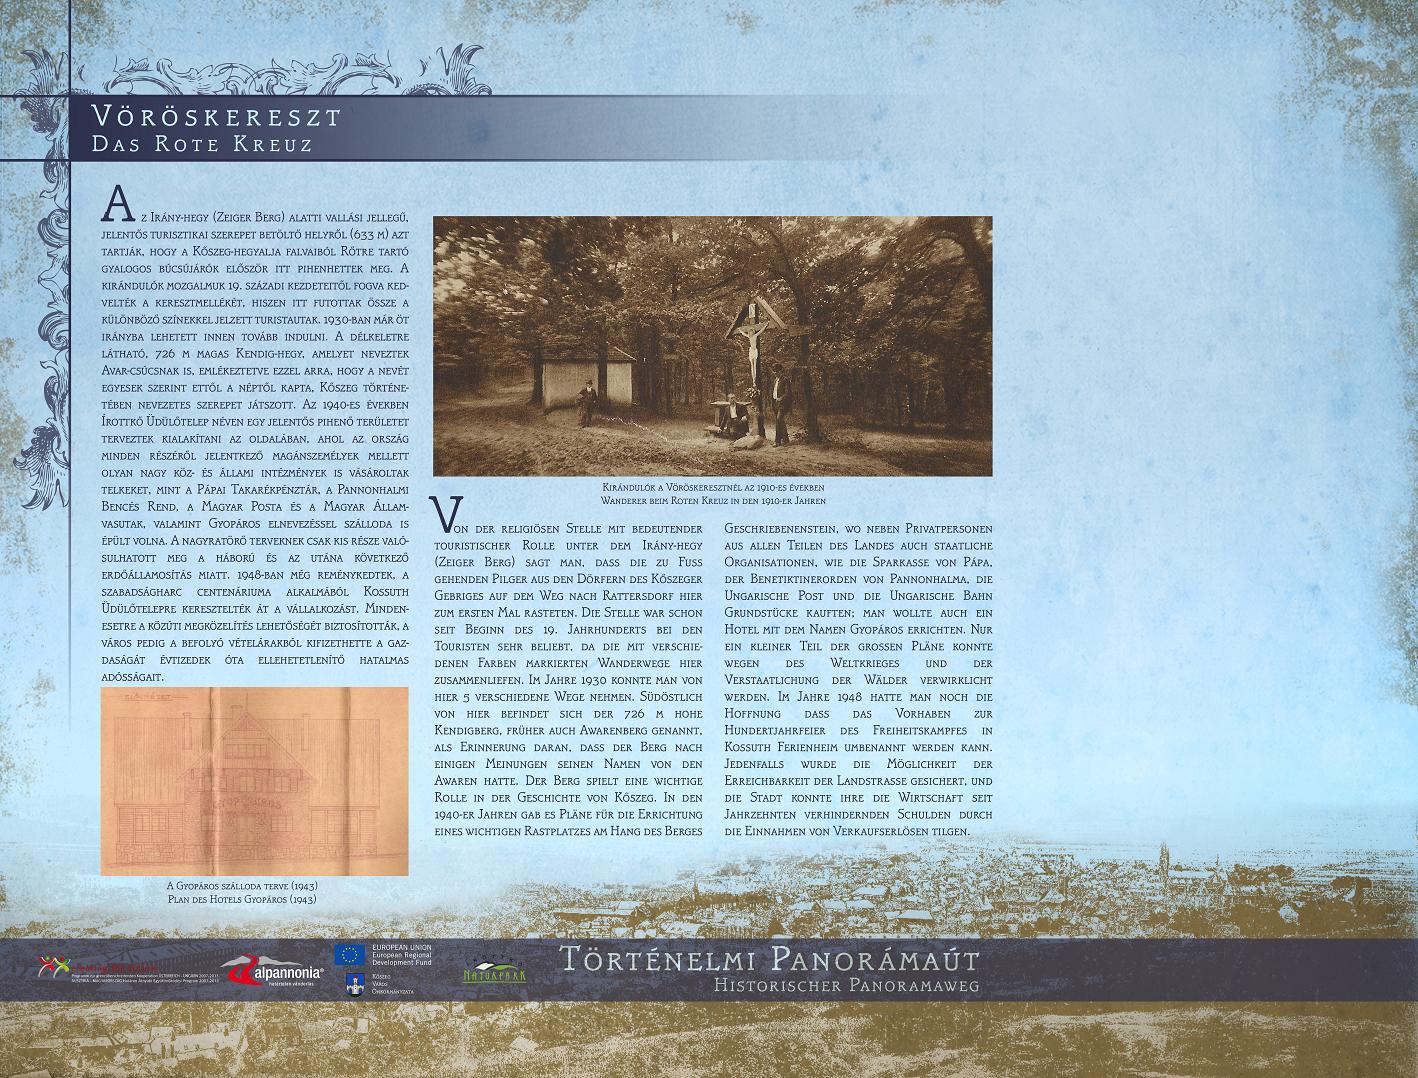 Történelmi panorámaút tanösvény – Kőszegi-hegység